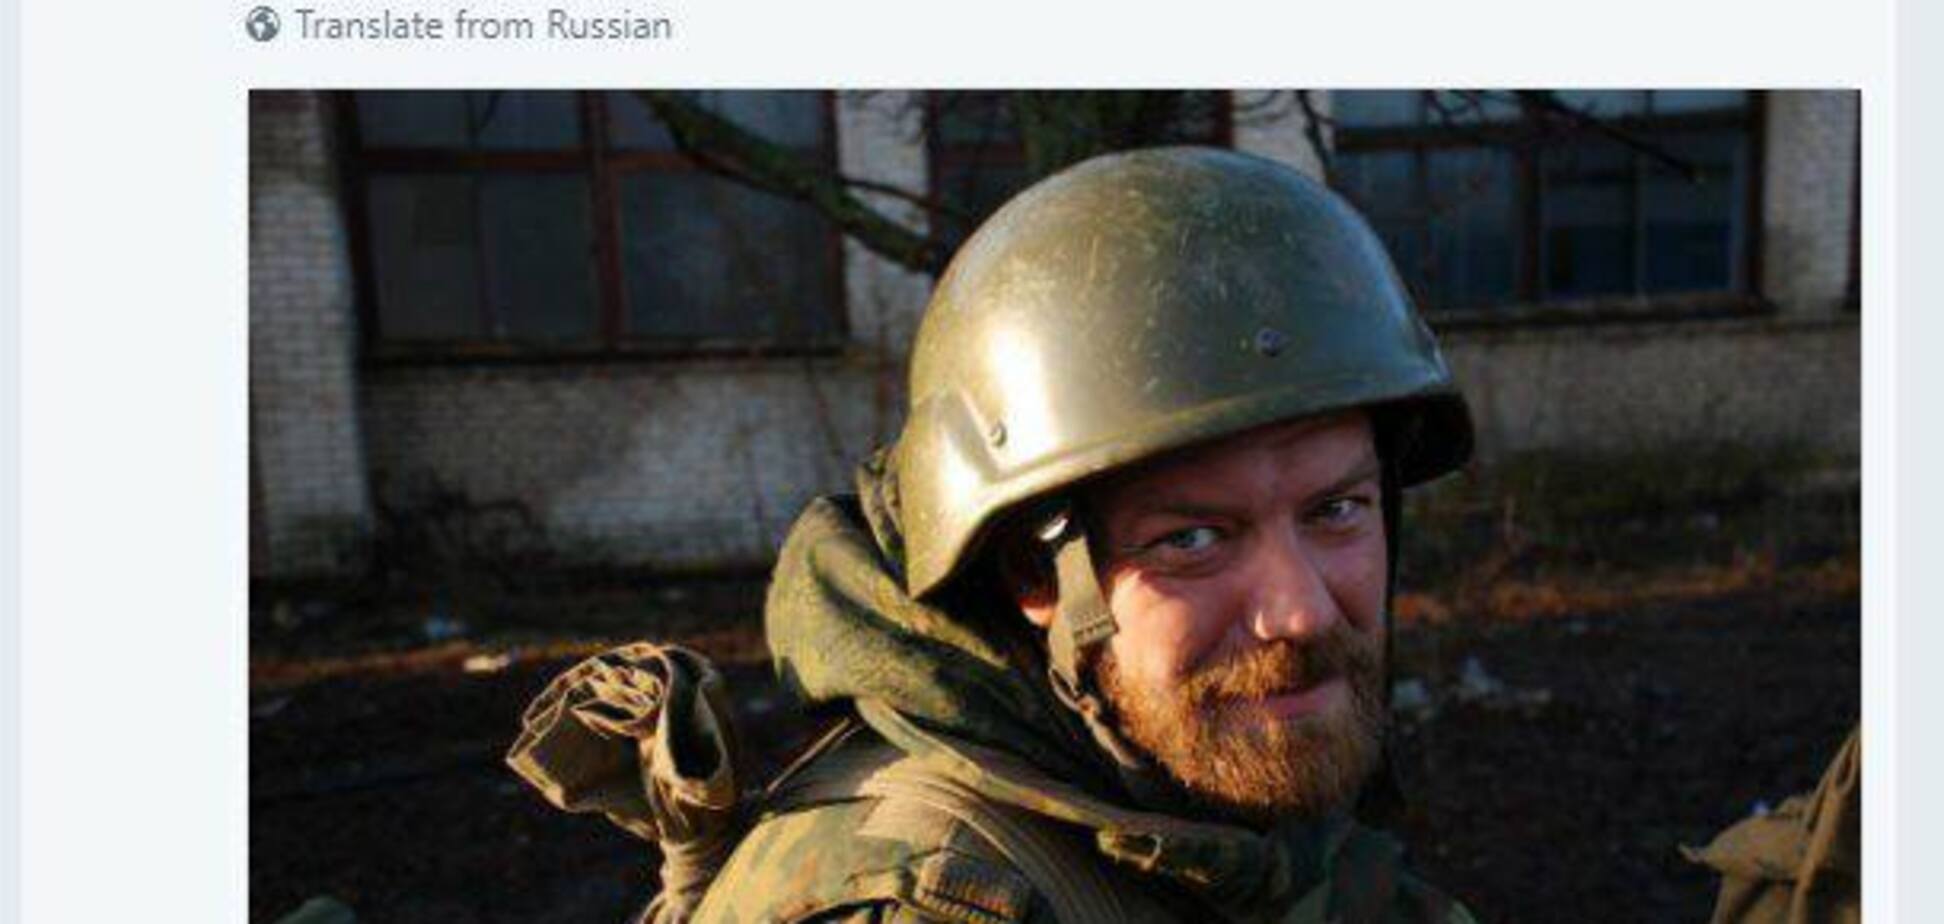 Черговий іхтамнєт: на Донбасі вбили терориста з Росії